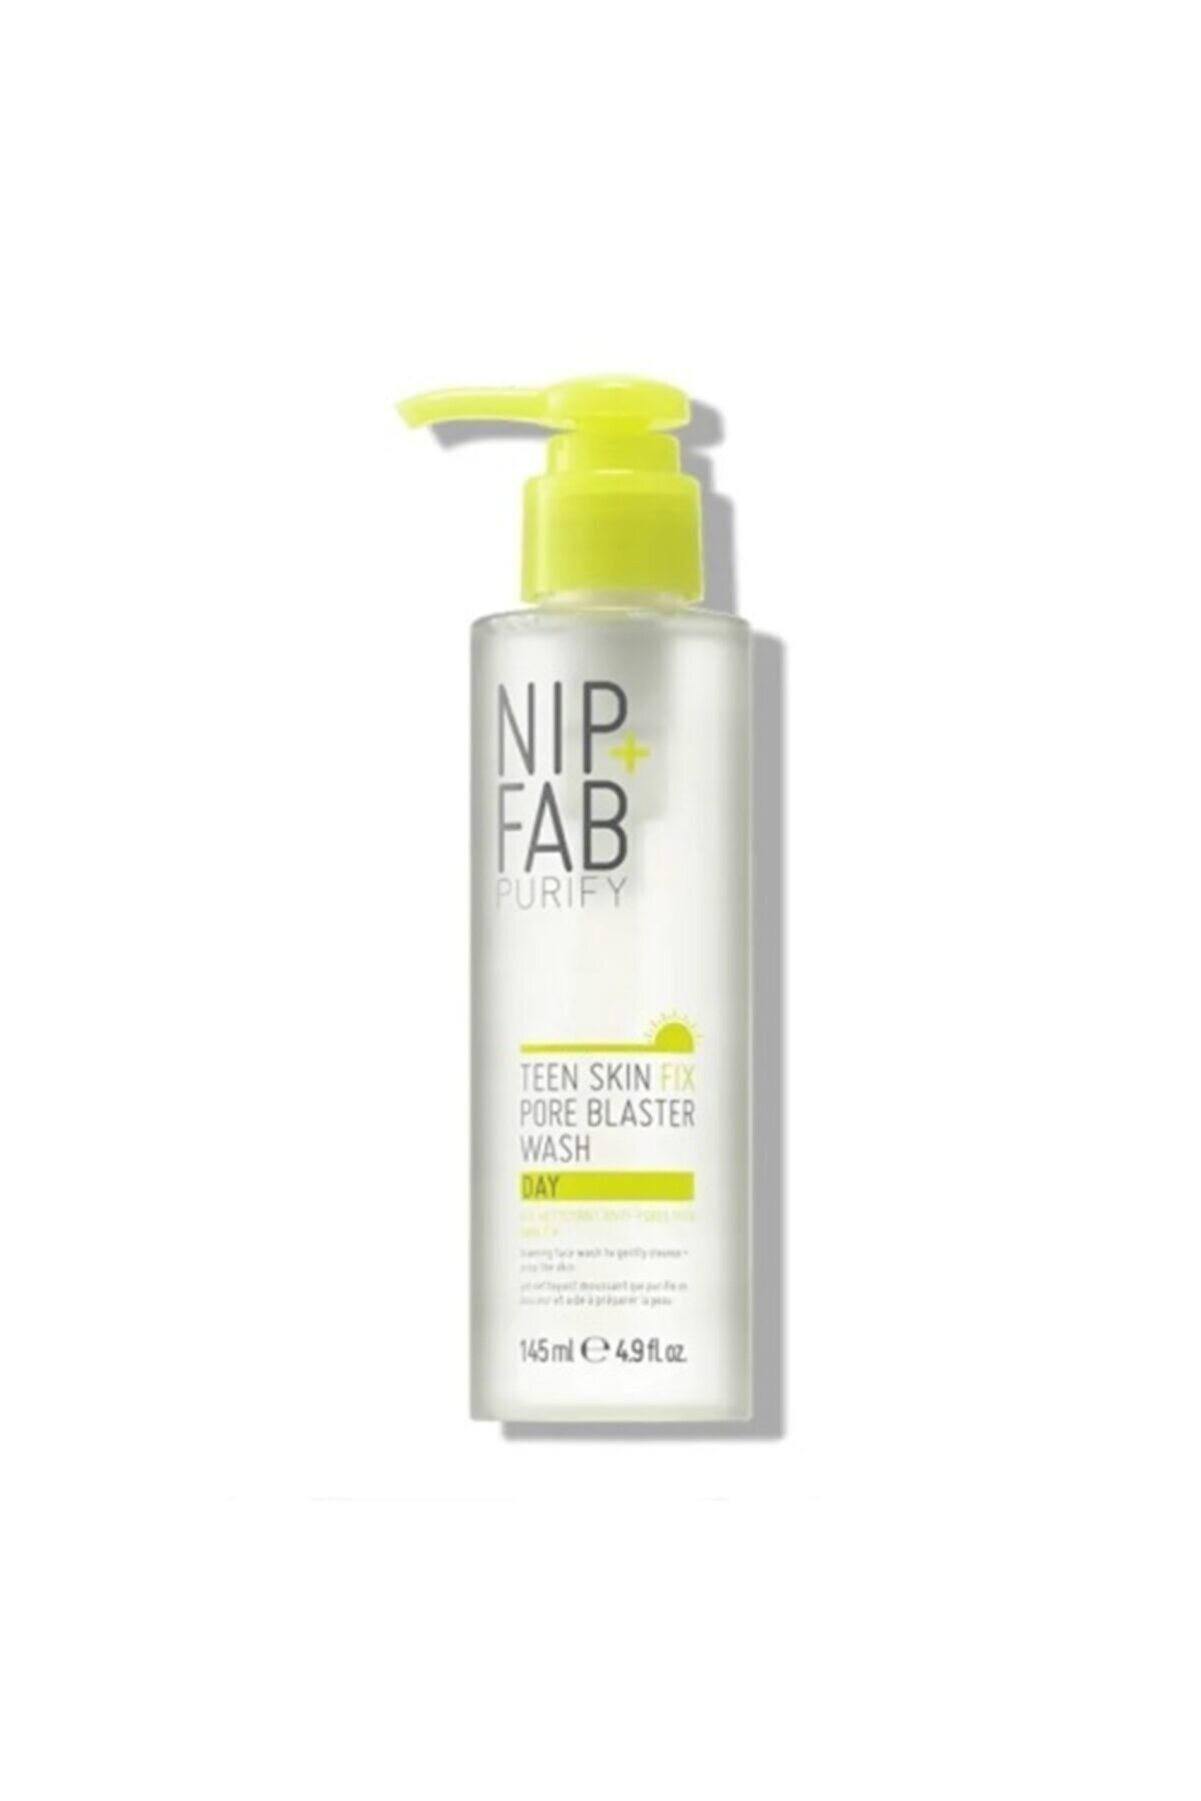 NIP+FAB Teen Skin Gözenek Temizleyici Yıkama Jeli 145 ml -